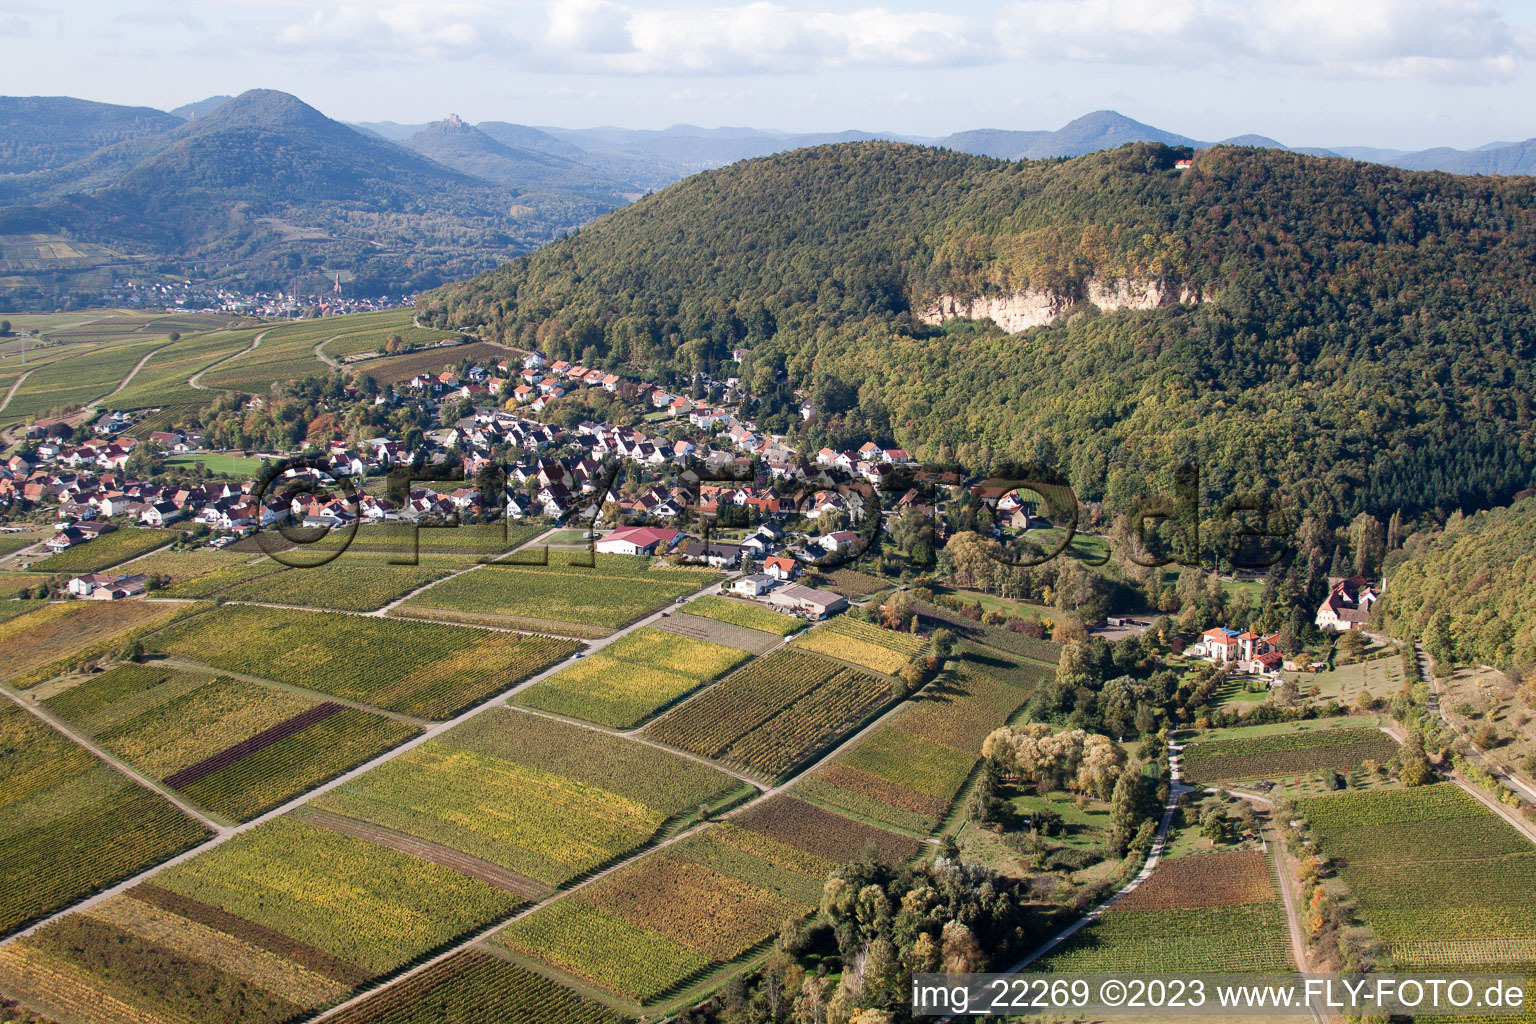 Frankweiler im Bundesland Rheinland-Pfalz, Deutschland aus der Luft betrachtet